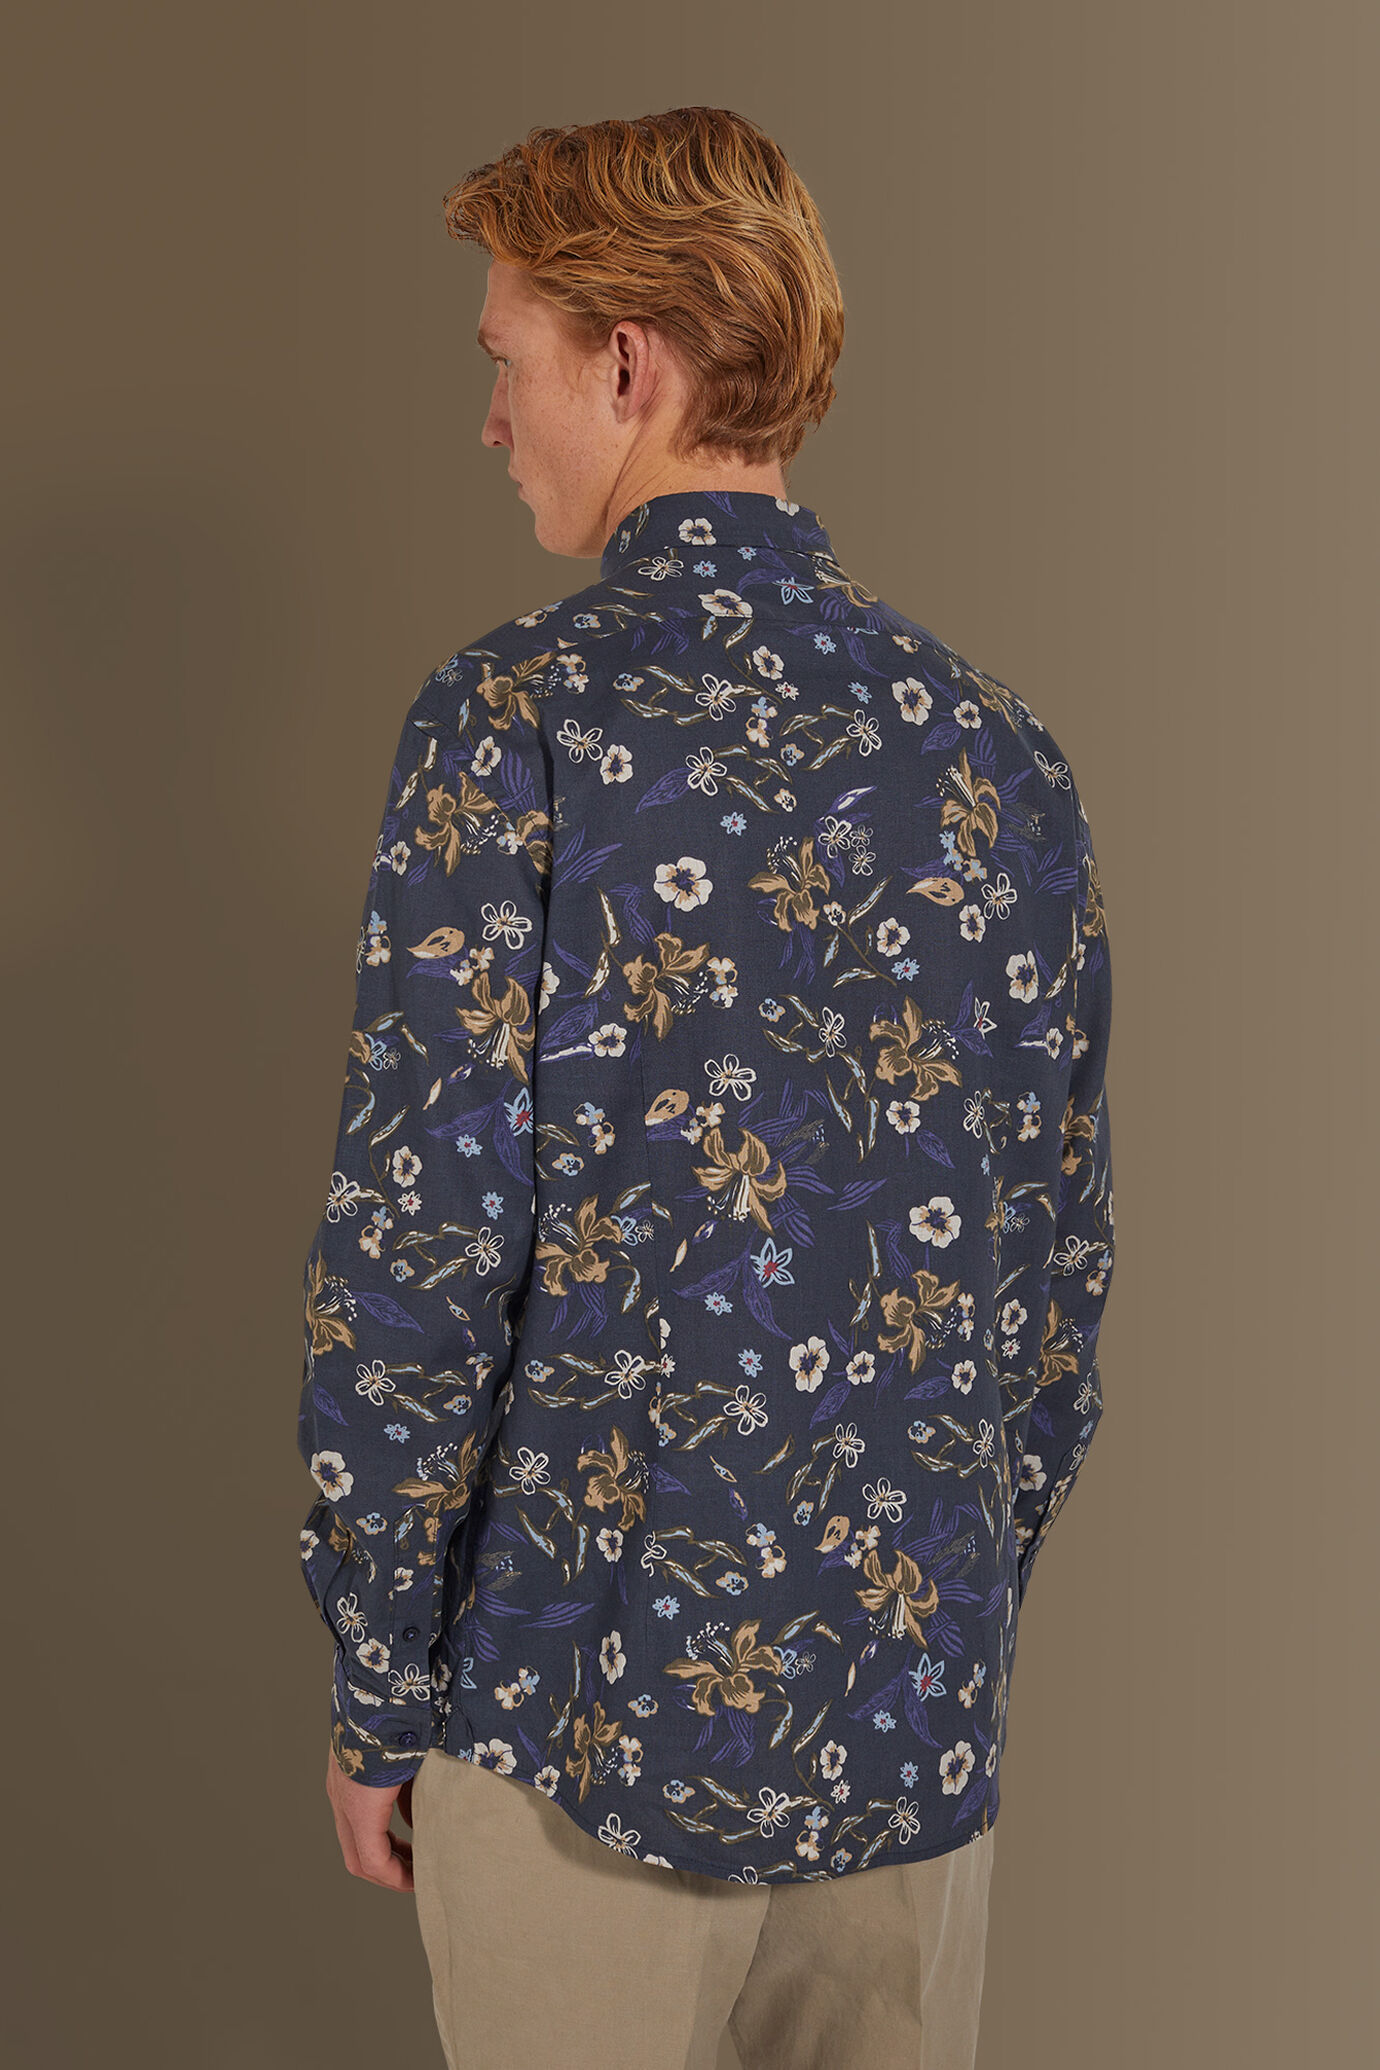 Camicia casual uomo collo francese misto lino con stampa floreale image number 3